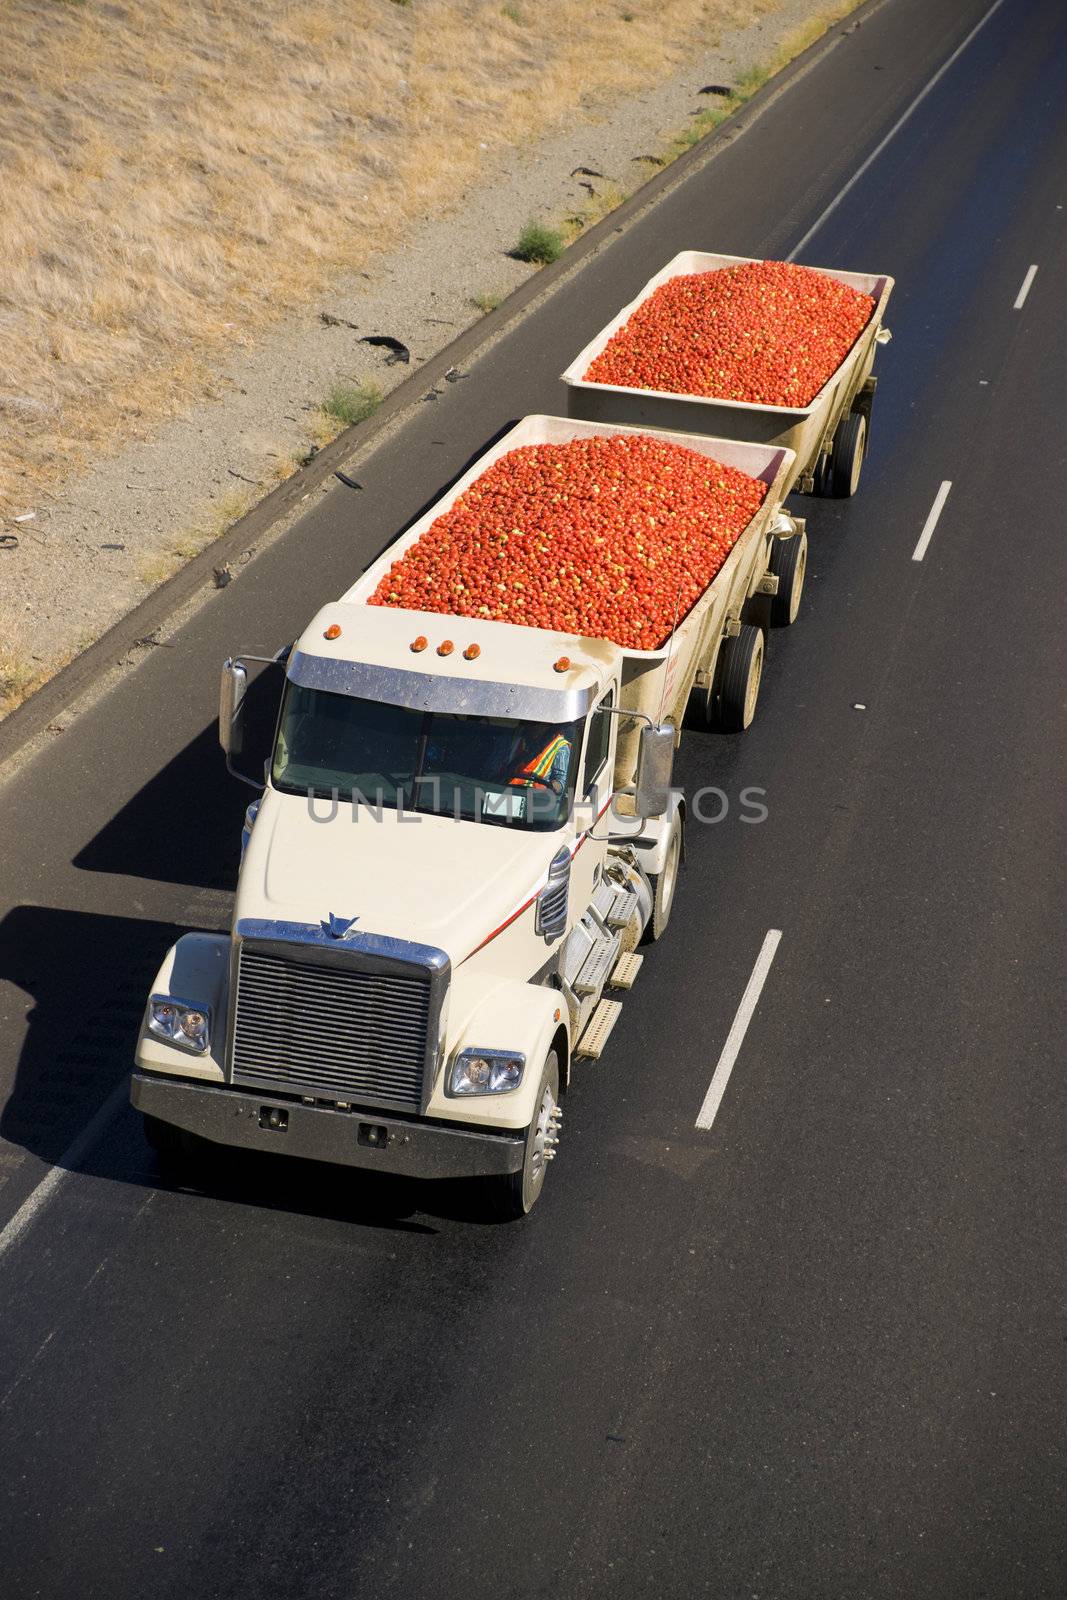 A Transport Truck hauls Fruit through the desert